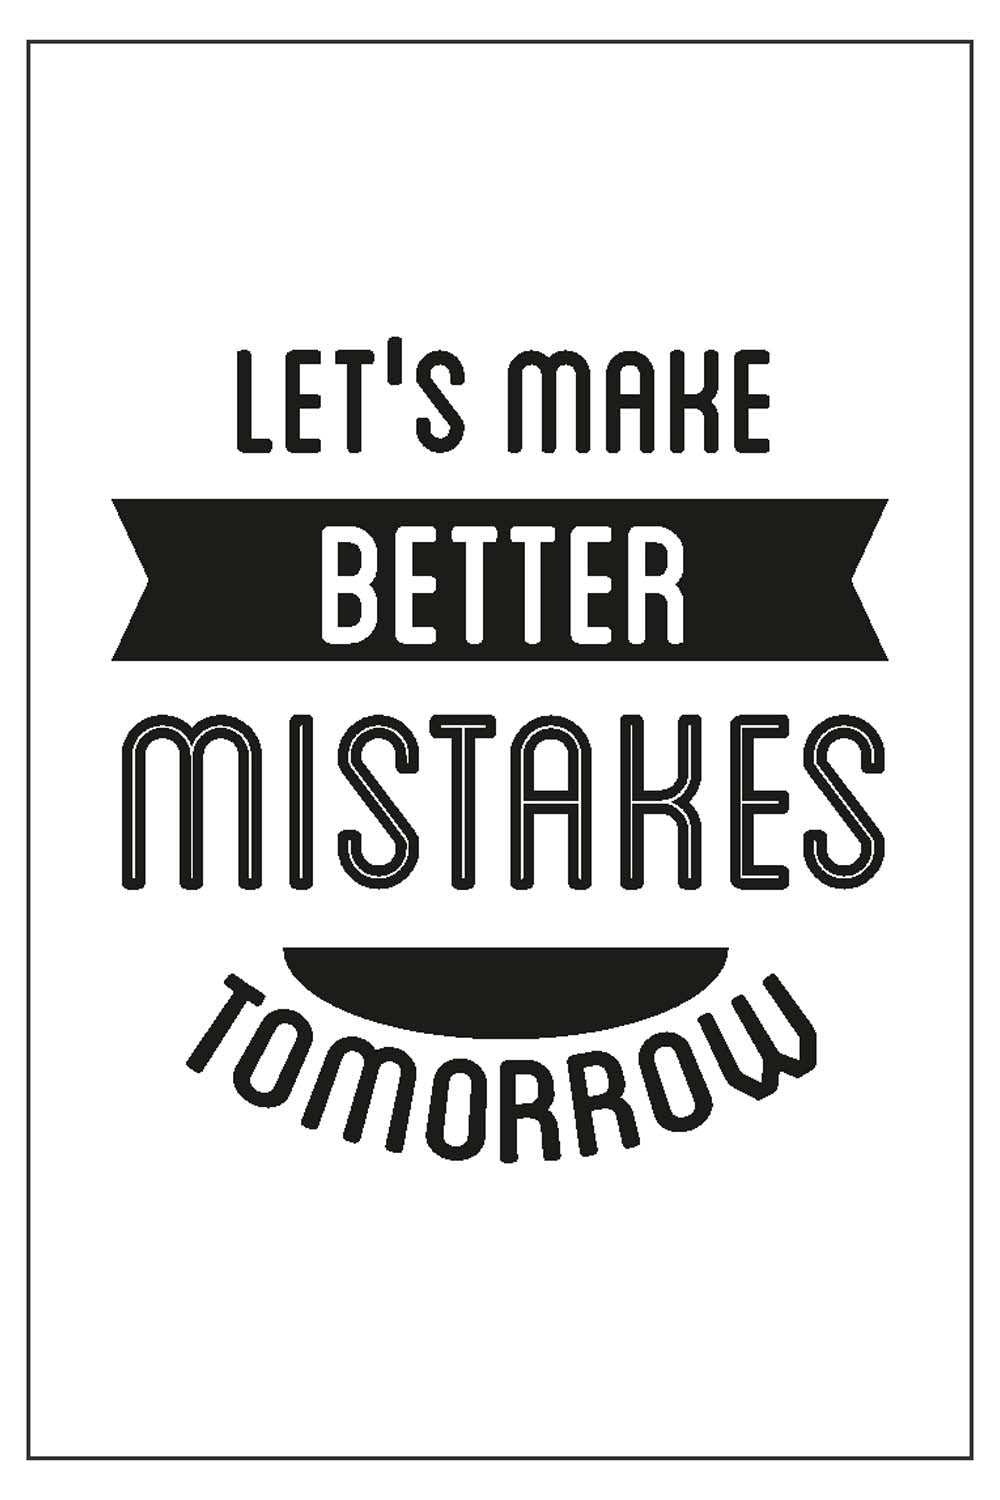 Let's Make Better Mistake Tomorrow - Glass Framed Poster